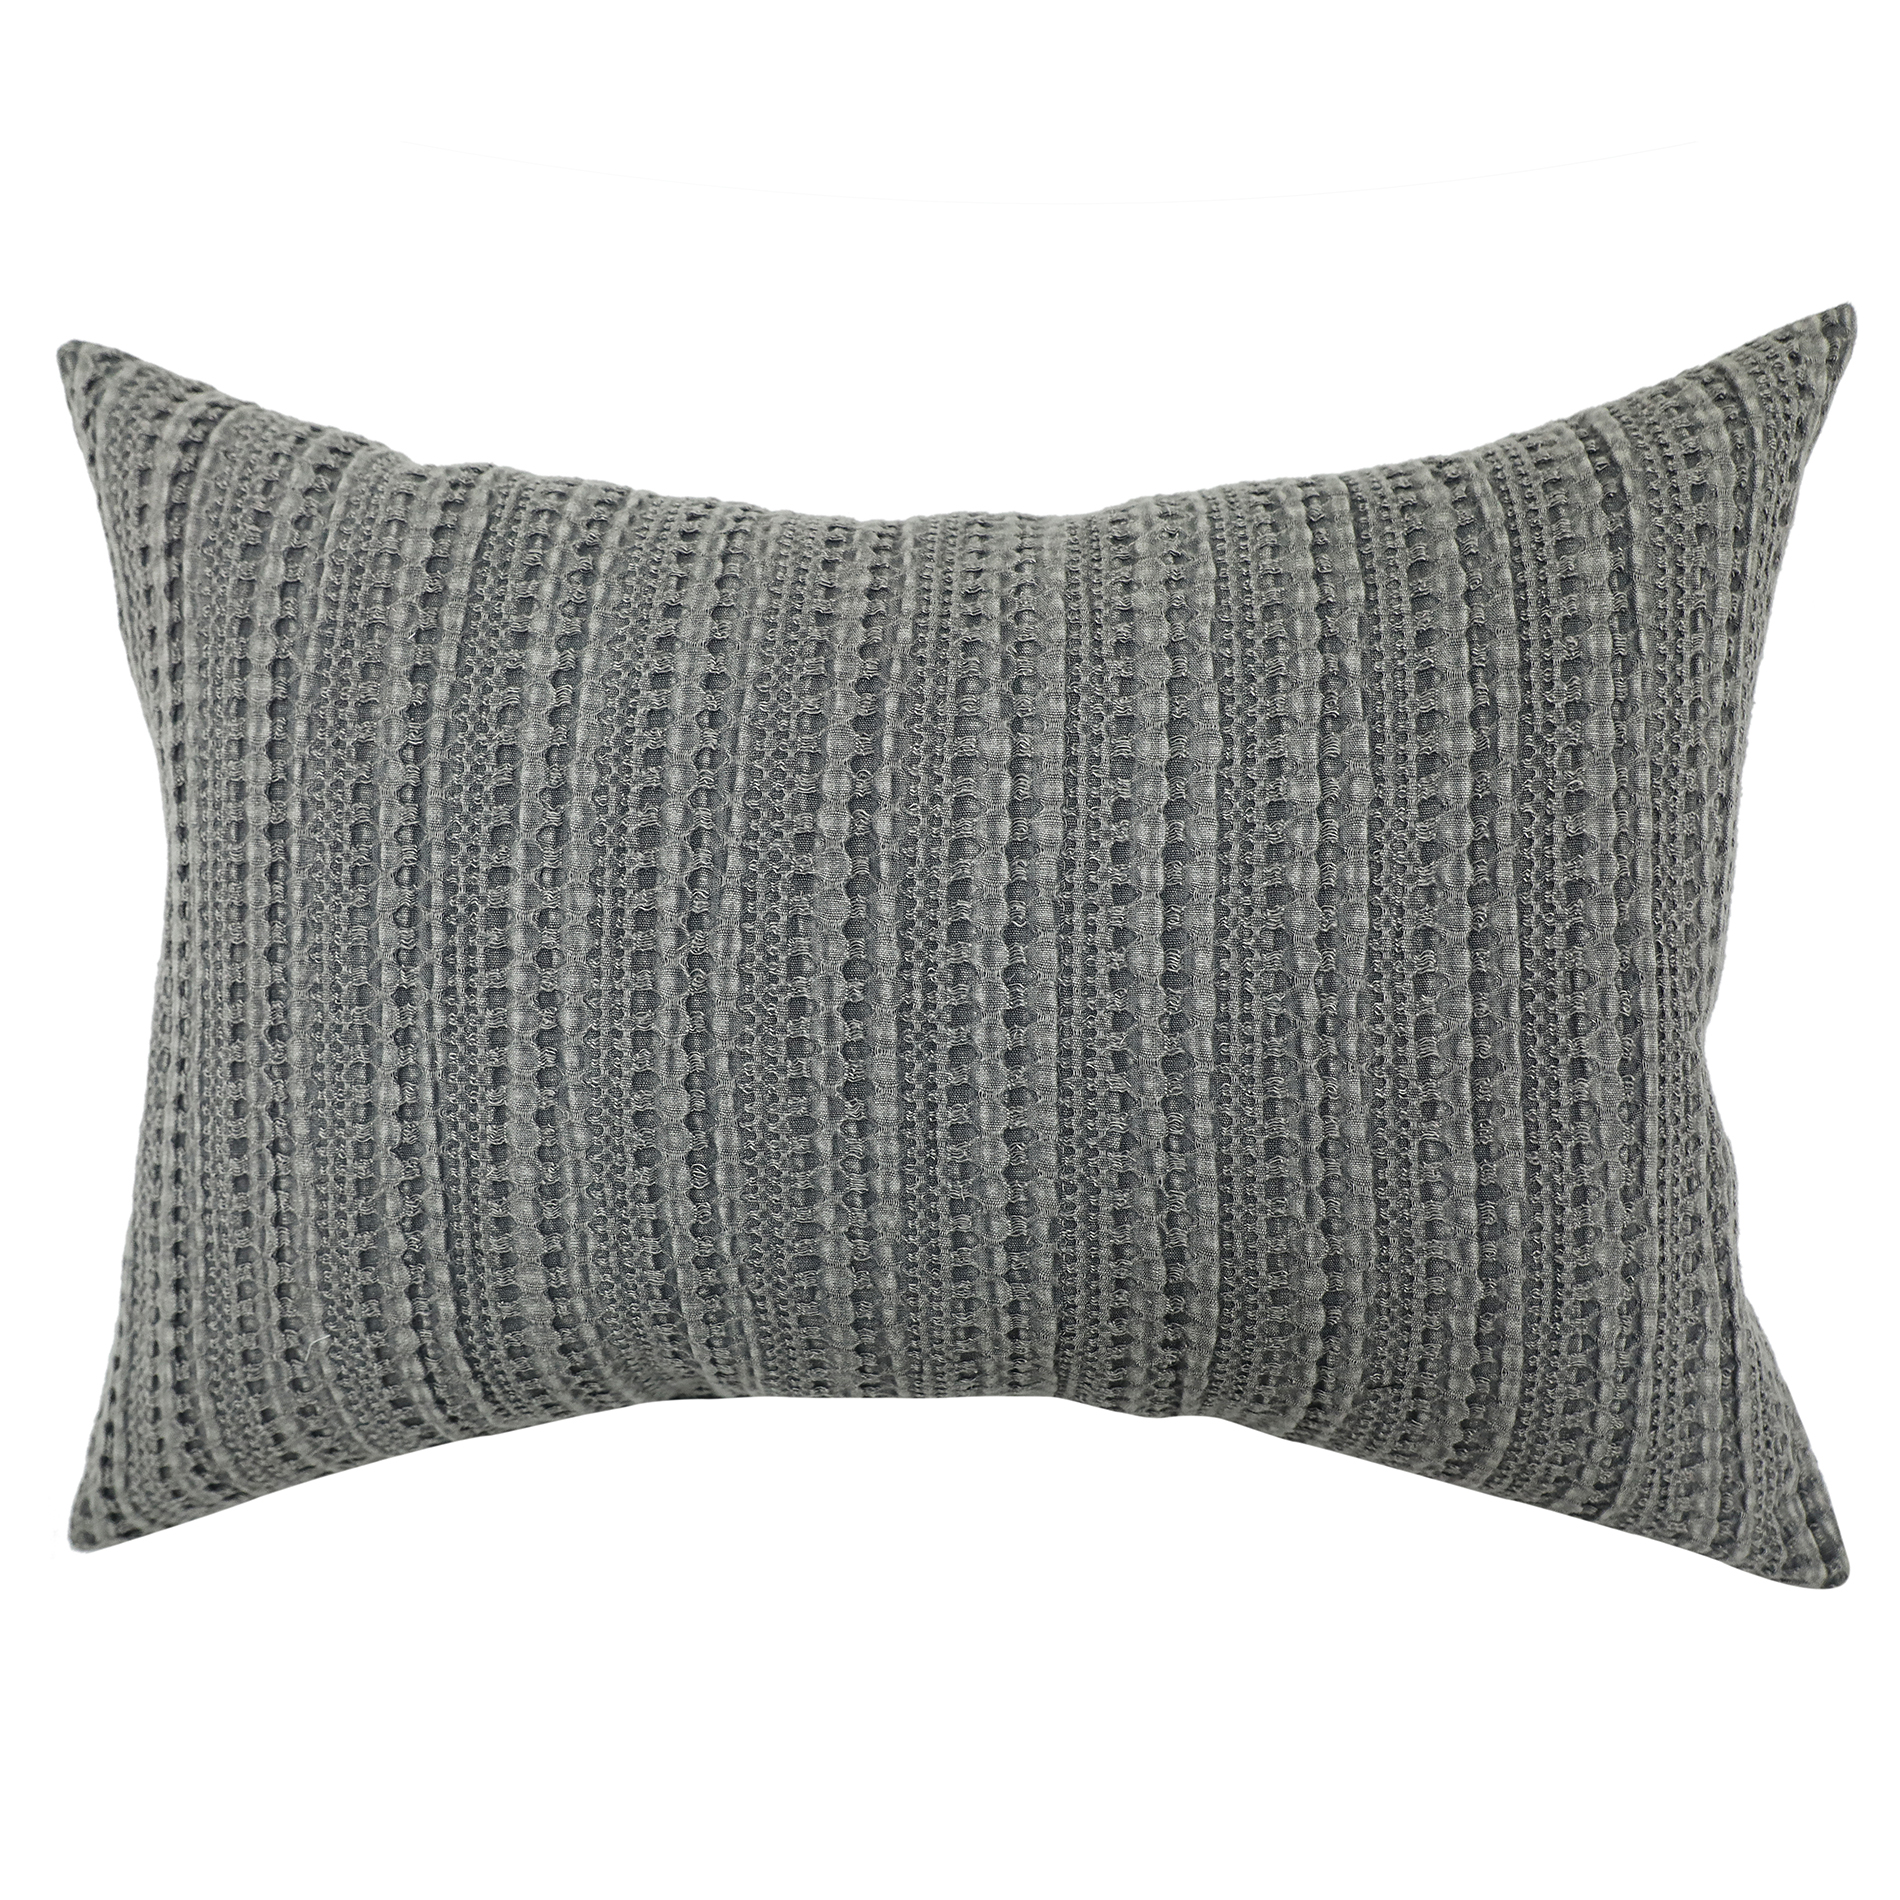 Grey Textured Knit Decorative Pillow